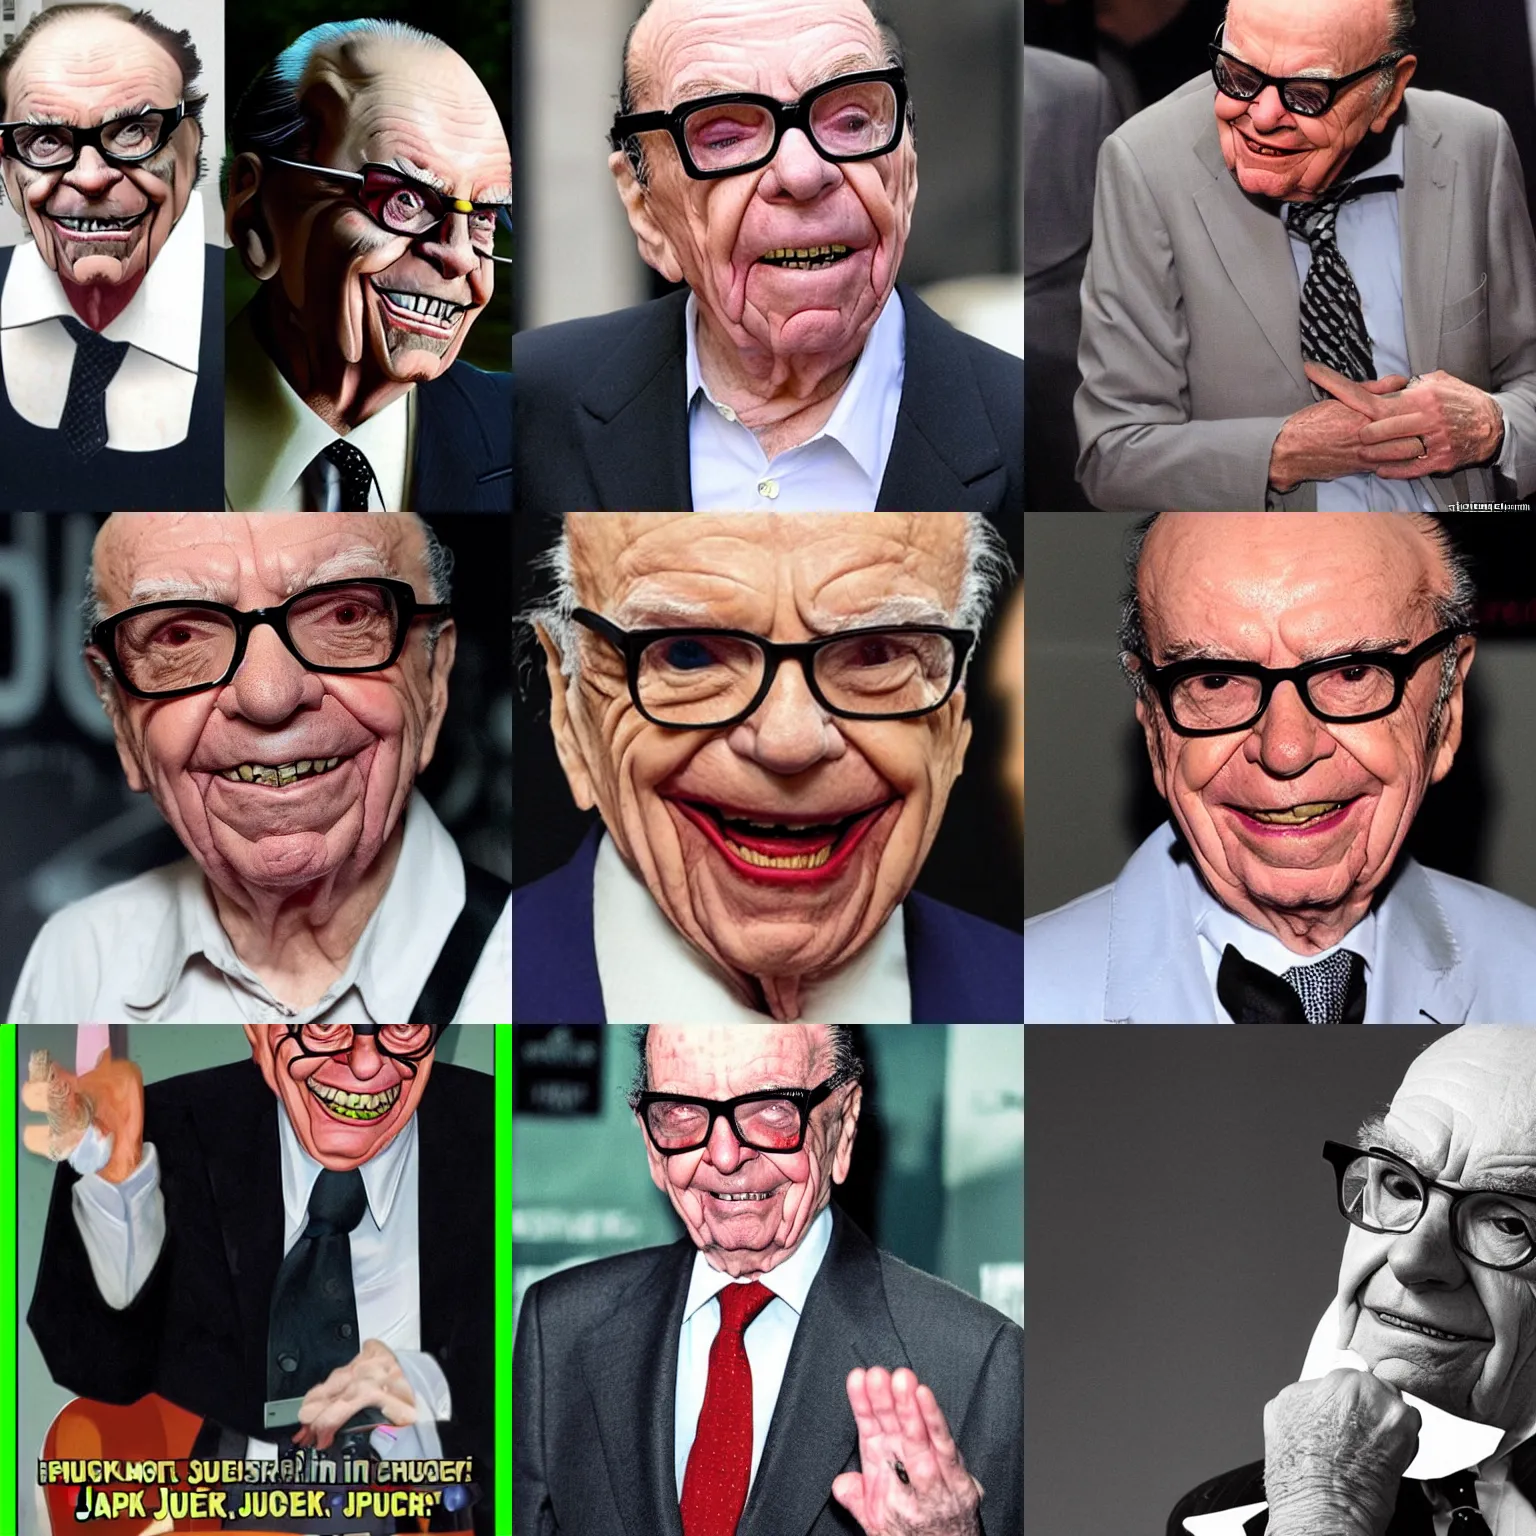 Prompt: Rupert Murdoch as Jack Nicholson's joker